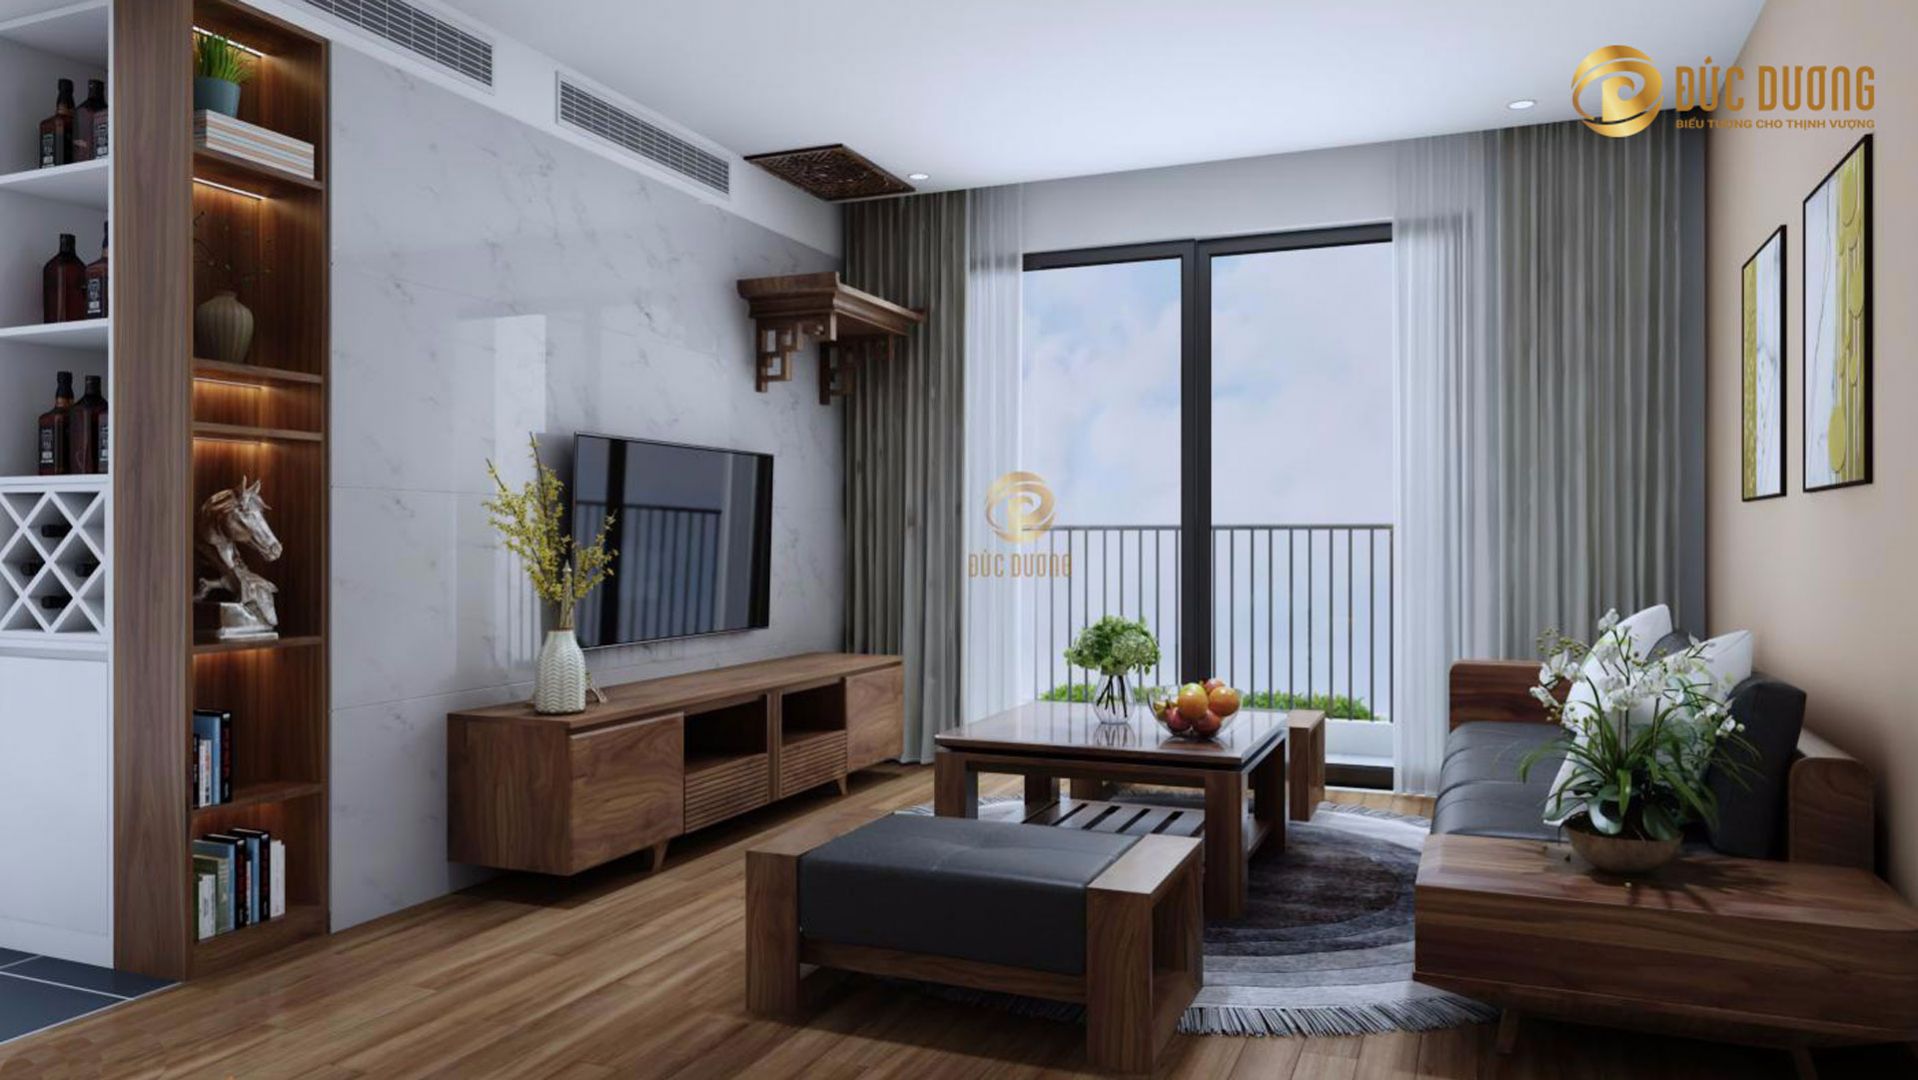 Thiết kế nội thất phòng khách hiện đại với không gian mở